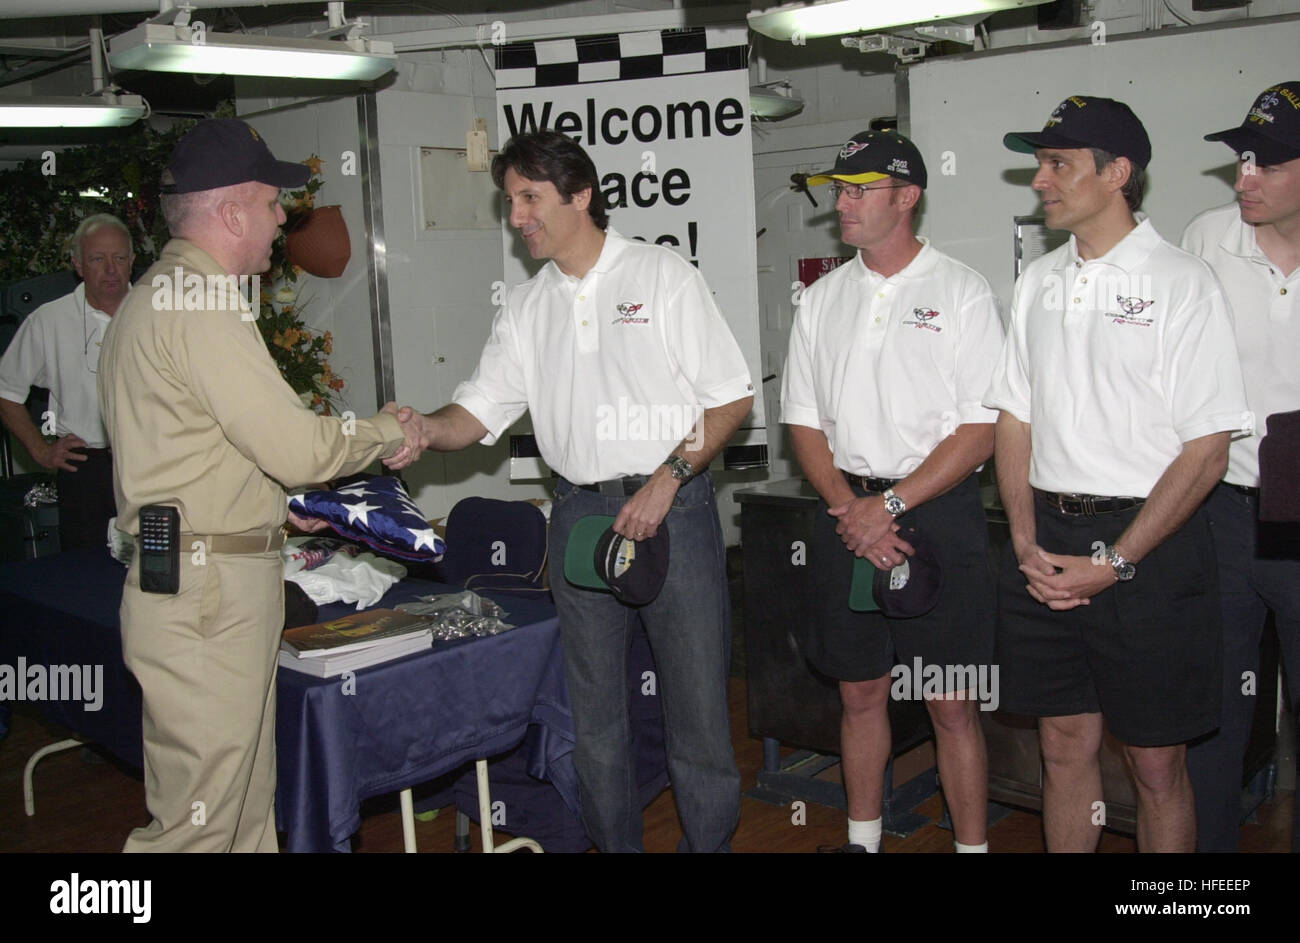 030509-N-0111R-002 Gaeta, Italien (9. Mai 2003)--GTS Fahrer Weltmeister Ron Fellows der amtierende empfängt der amtierende Command Master Chief an Bord der 6. US-Flotte Flaggschiff USS La Salle (AGF 3) bei einem Besuch in das Schiff von Corvette racing Team-Mitglieder eine amerikanische Flagge. Die Flagge wurde das Schiff überflogen und innerhalb eines Korvetten in den kommenden Rennen von Le Mans durchgeführt werden. Die Treiber verbrachte mehrere Stunden auf dem Schiff Chaos Decks, Autogramme und im Gespräch mit Matrosen.  Foto: U.S. Navy des Fotografen Mate 2. Klasse Todd Reeves.  (FREIGEGEBEN) US Navy 030509-N-0111R-002 Ron Fellows Stockfoto